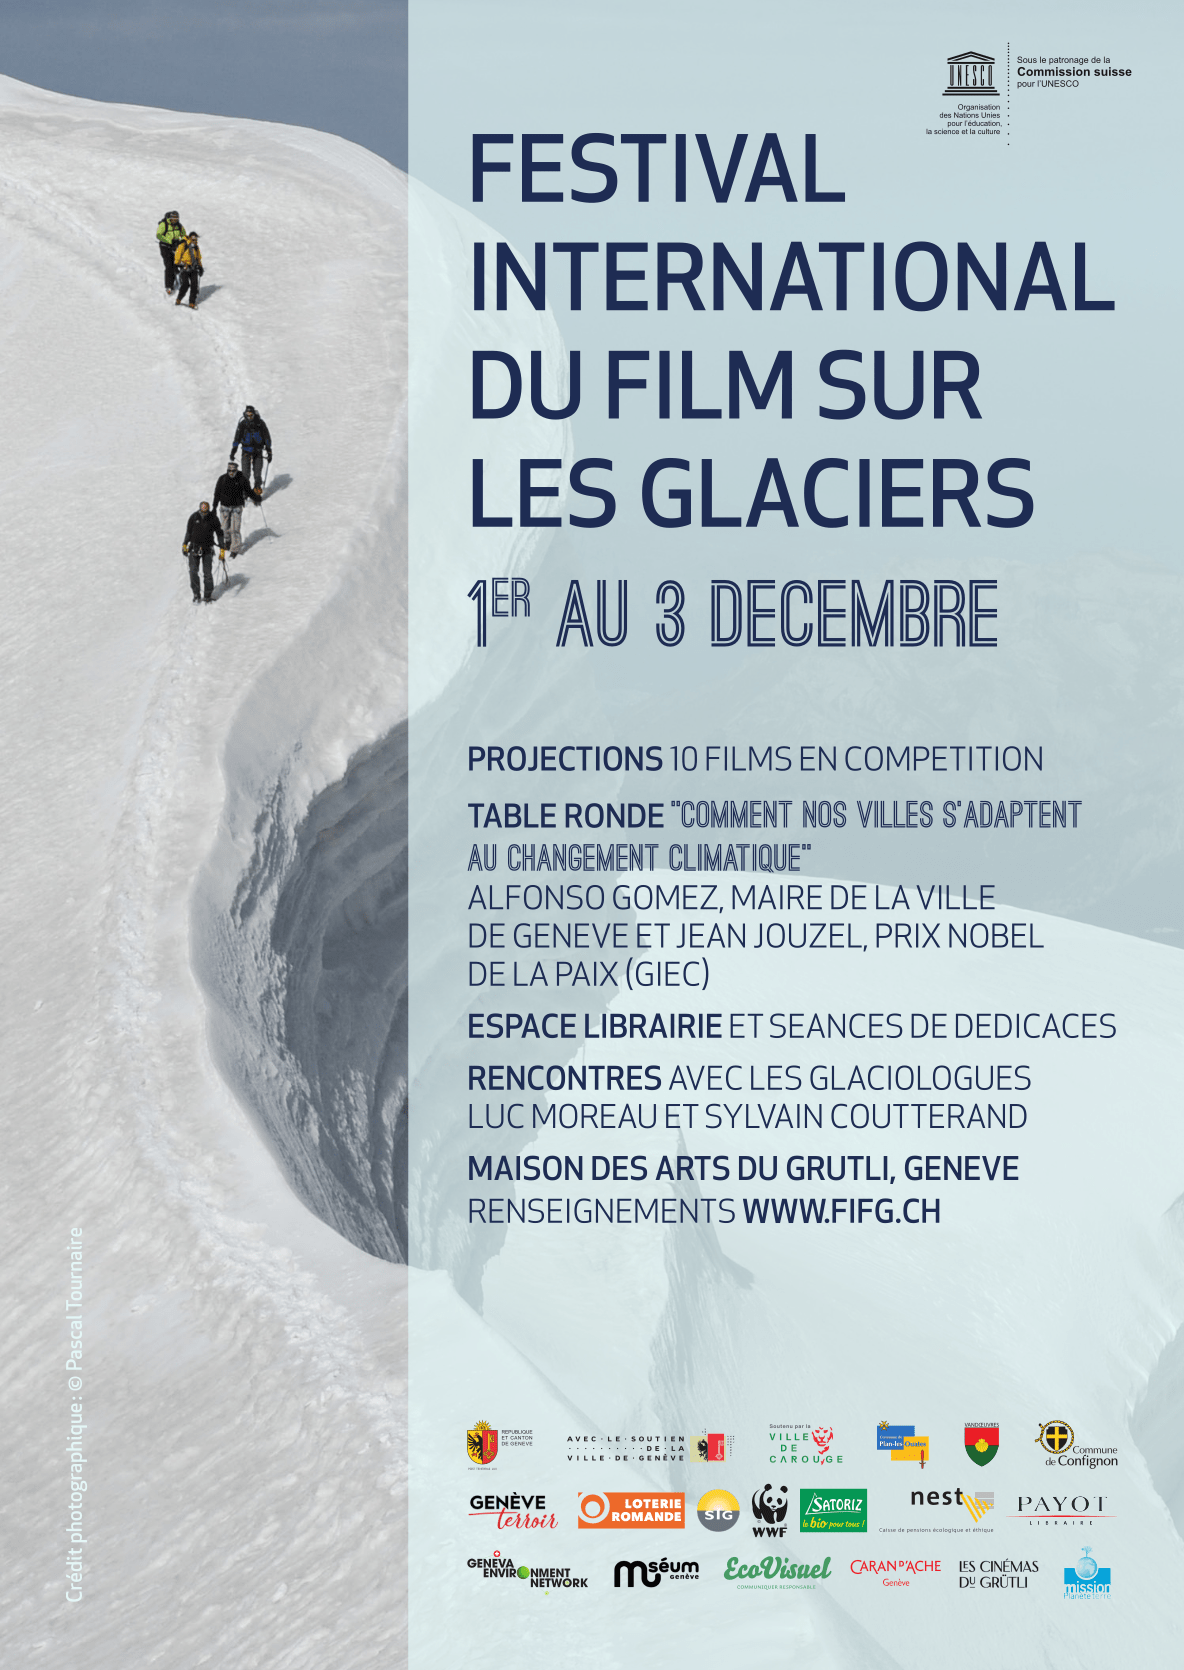 La 7ème édition du Festival International du Film sur les Glaciers